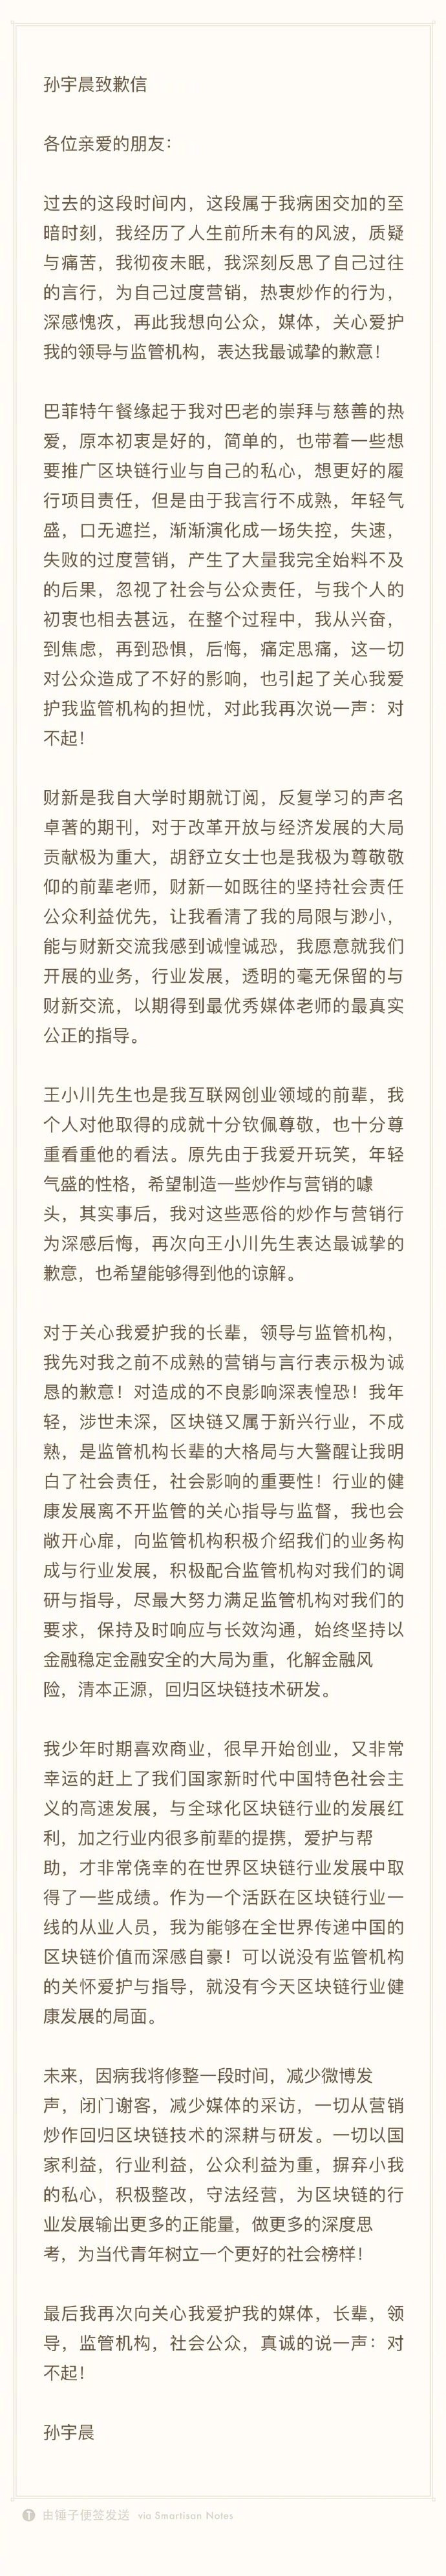 孙宇晨发致歉信：对自己过度营销和热衷炒作的行为深感愧疚